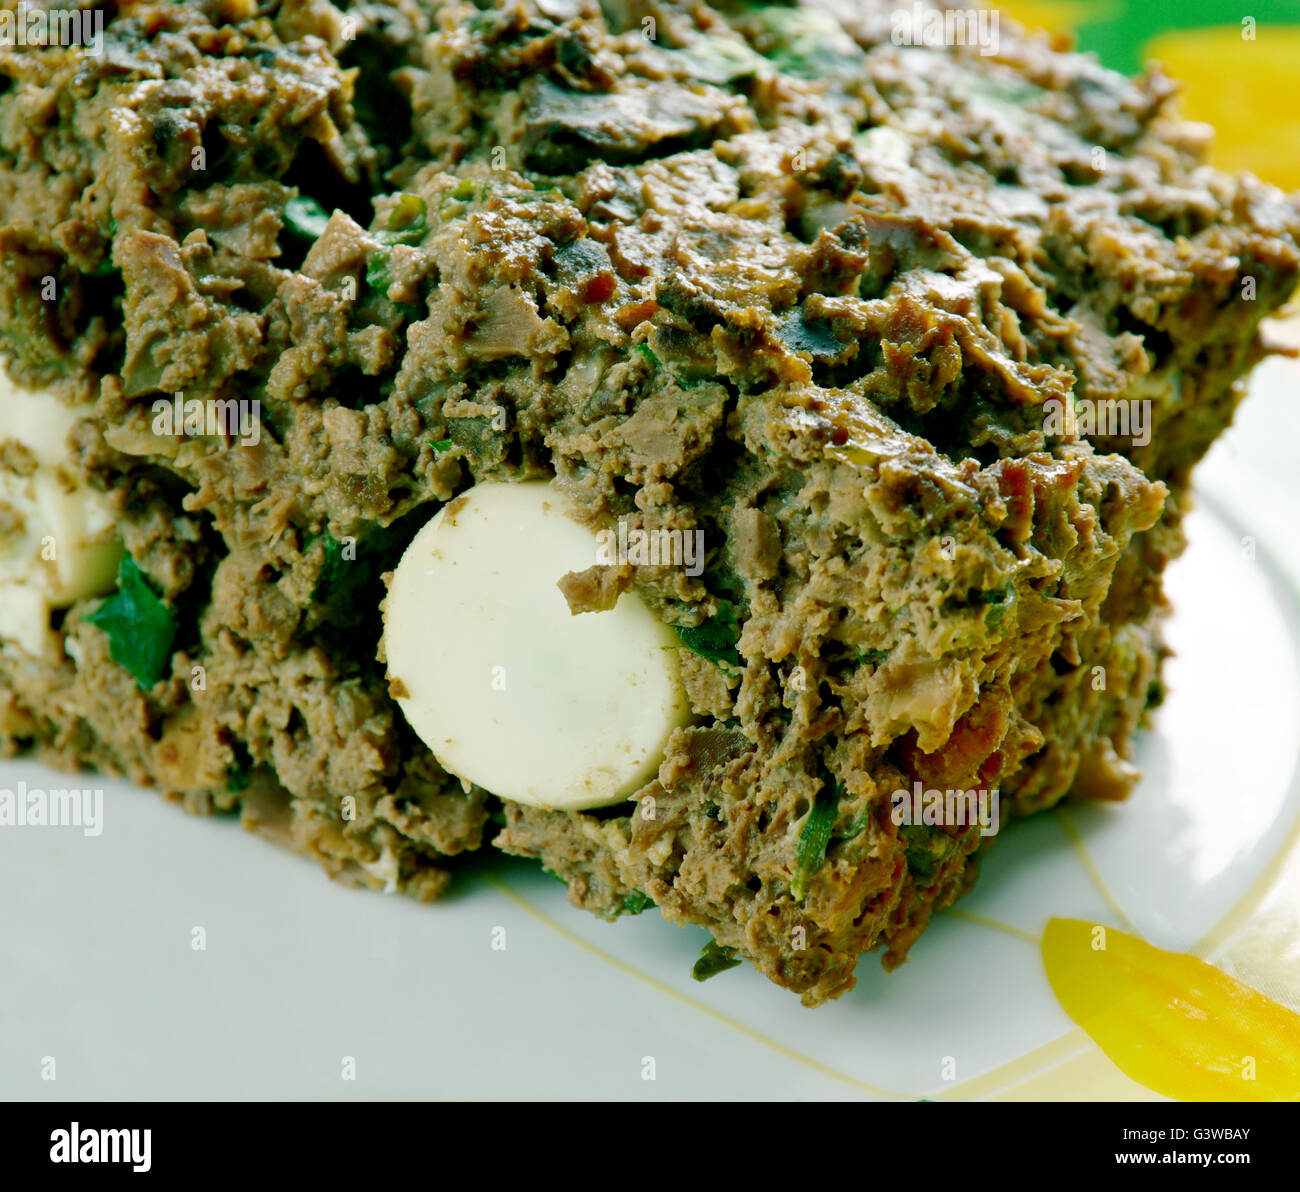 Drob - tradizionale piatto rumeno, simile ad un haggis, fatta di agnello macinata di frattaglie confezionate in omento e arrostito come un polpettone Foto Stock